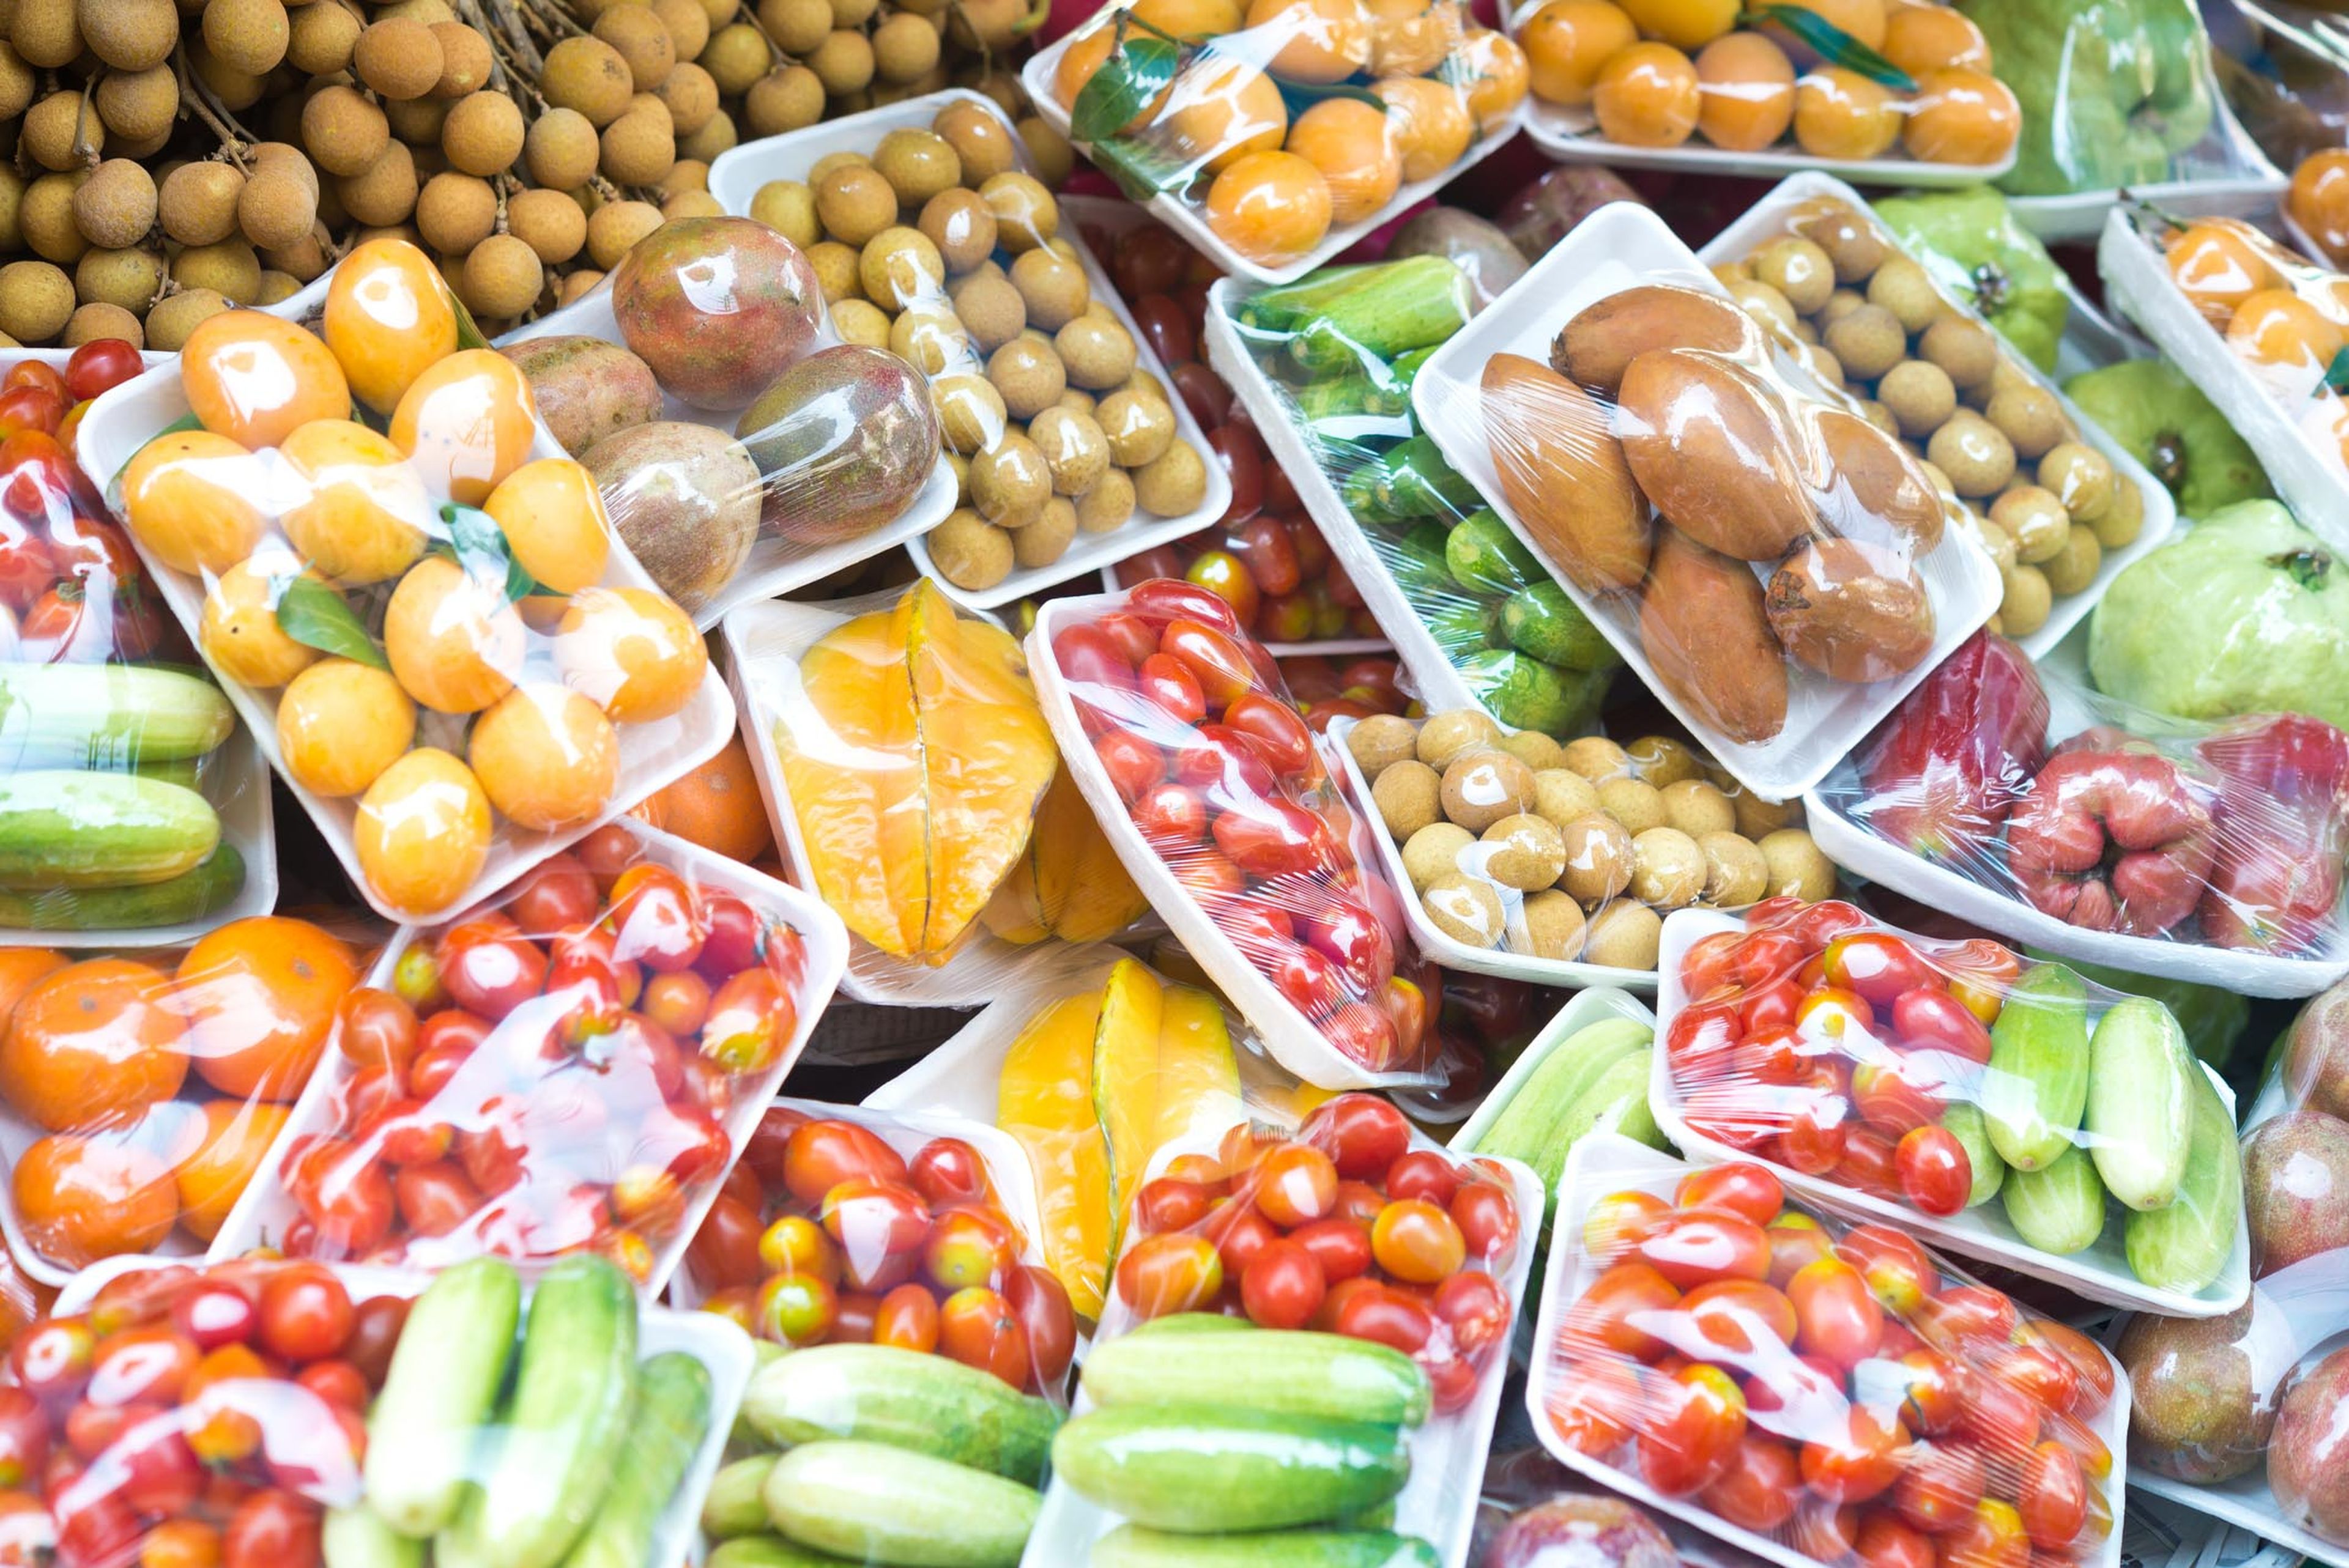 La venta de fruta y verdura en envases de plástico estará prohibida en España a partir de 2023